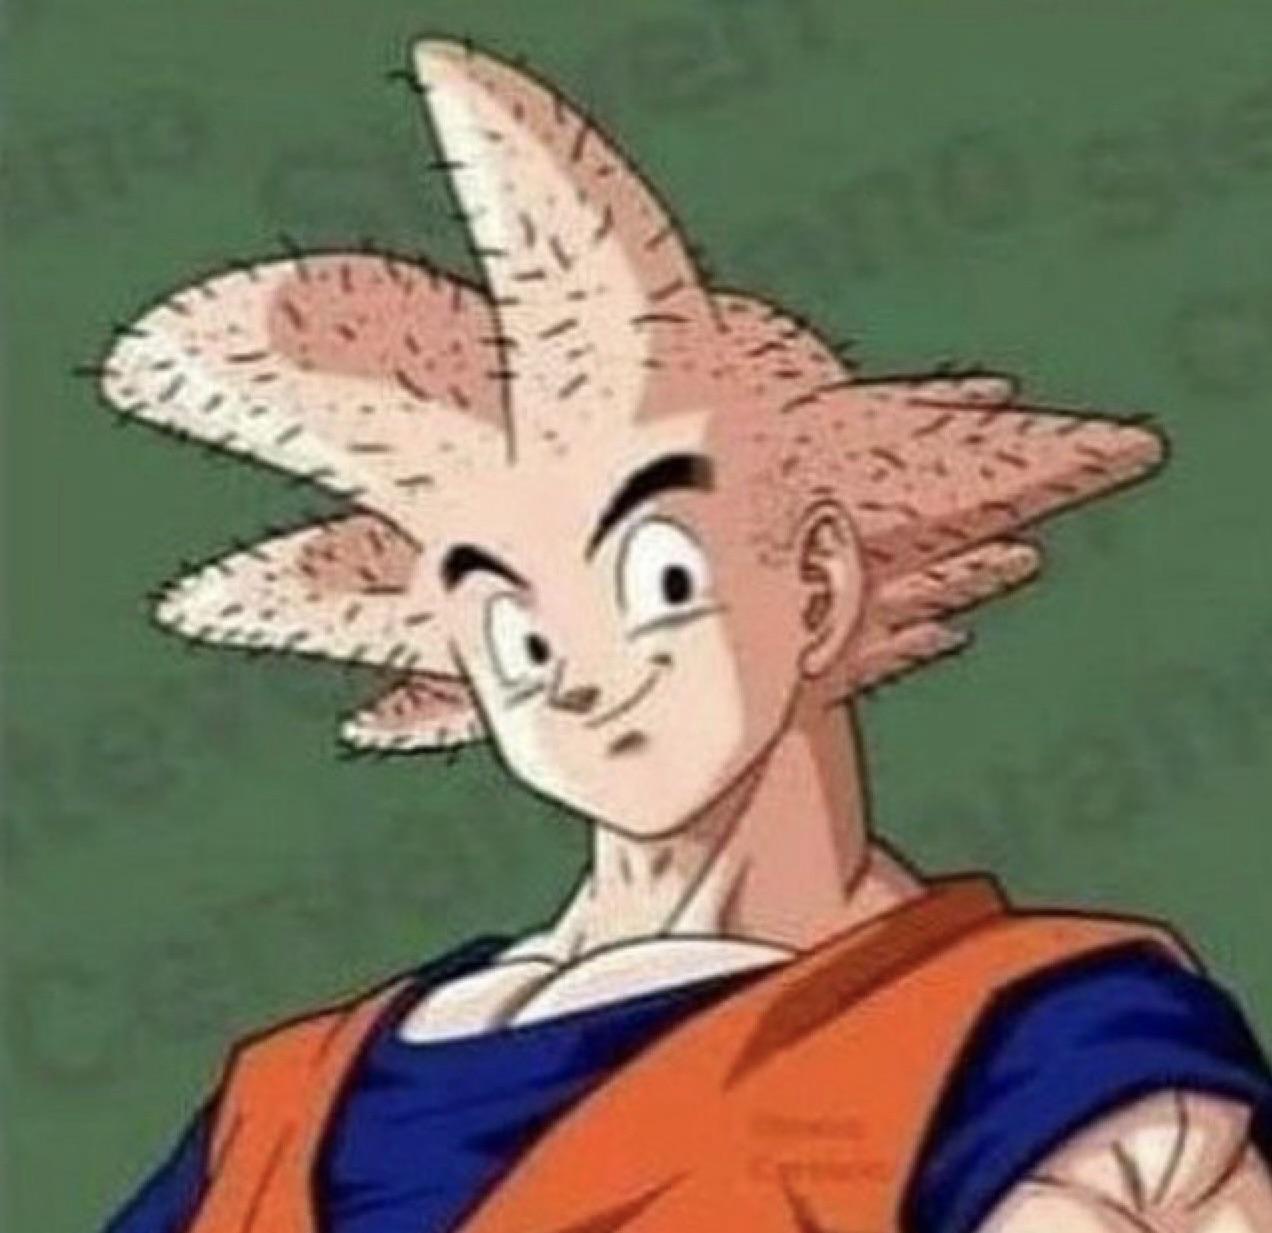 hairless Goku